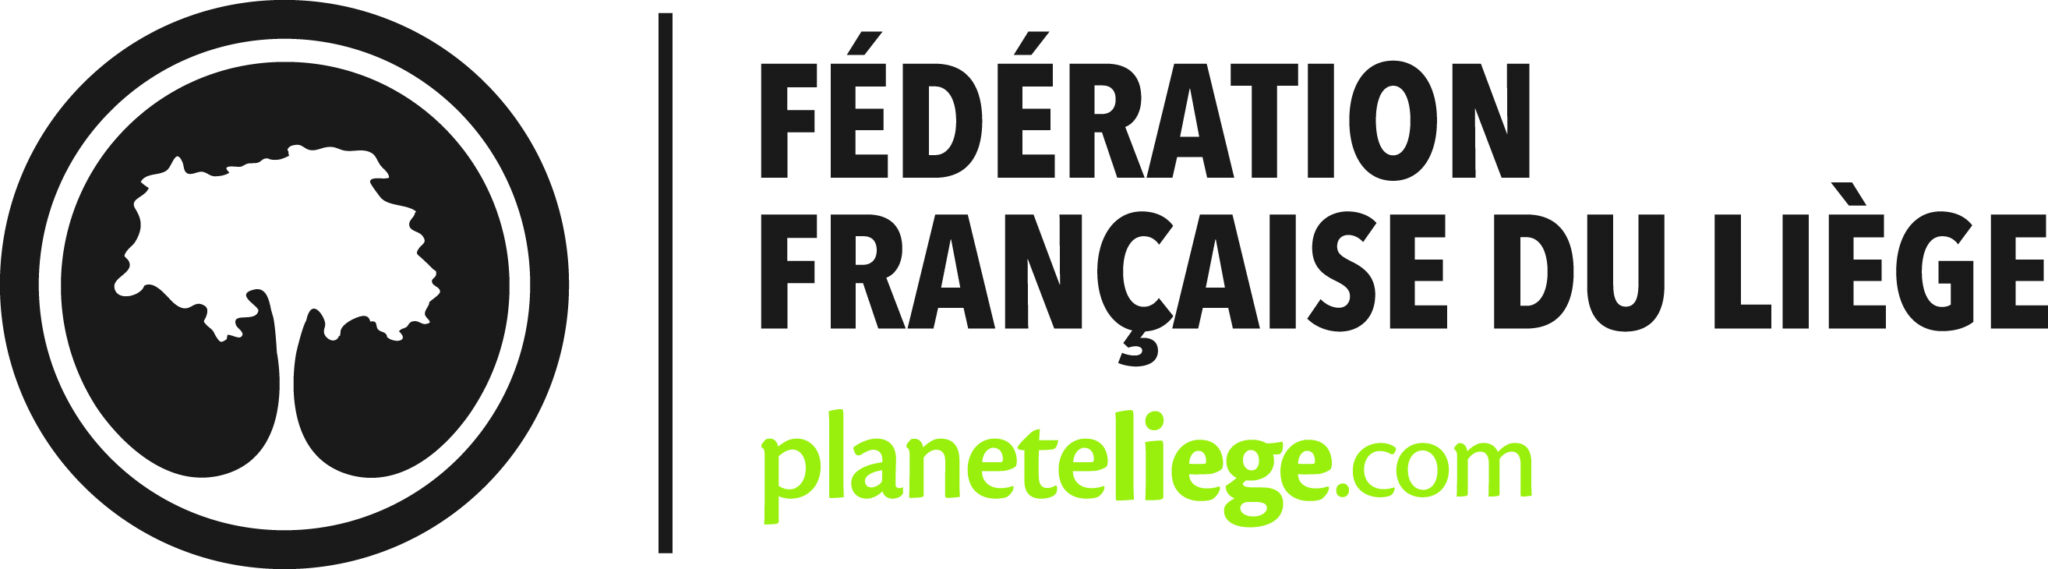 Fede_Fr_Liège